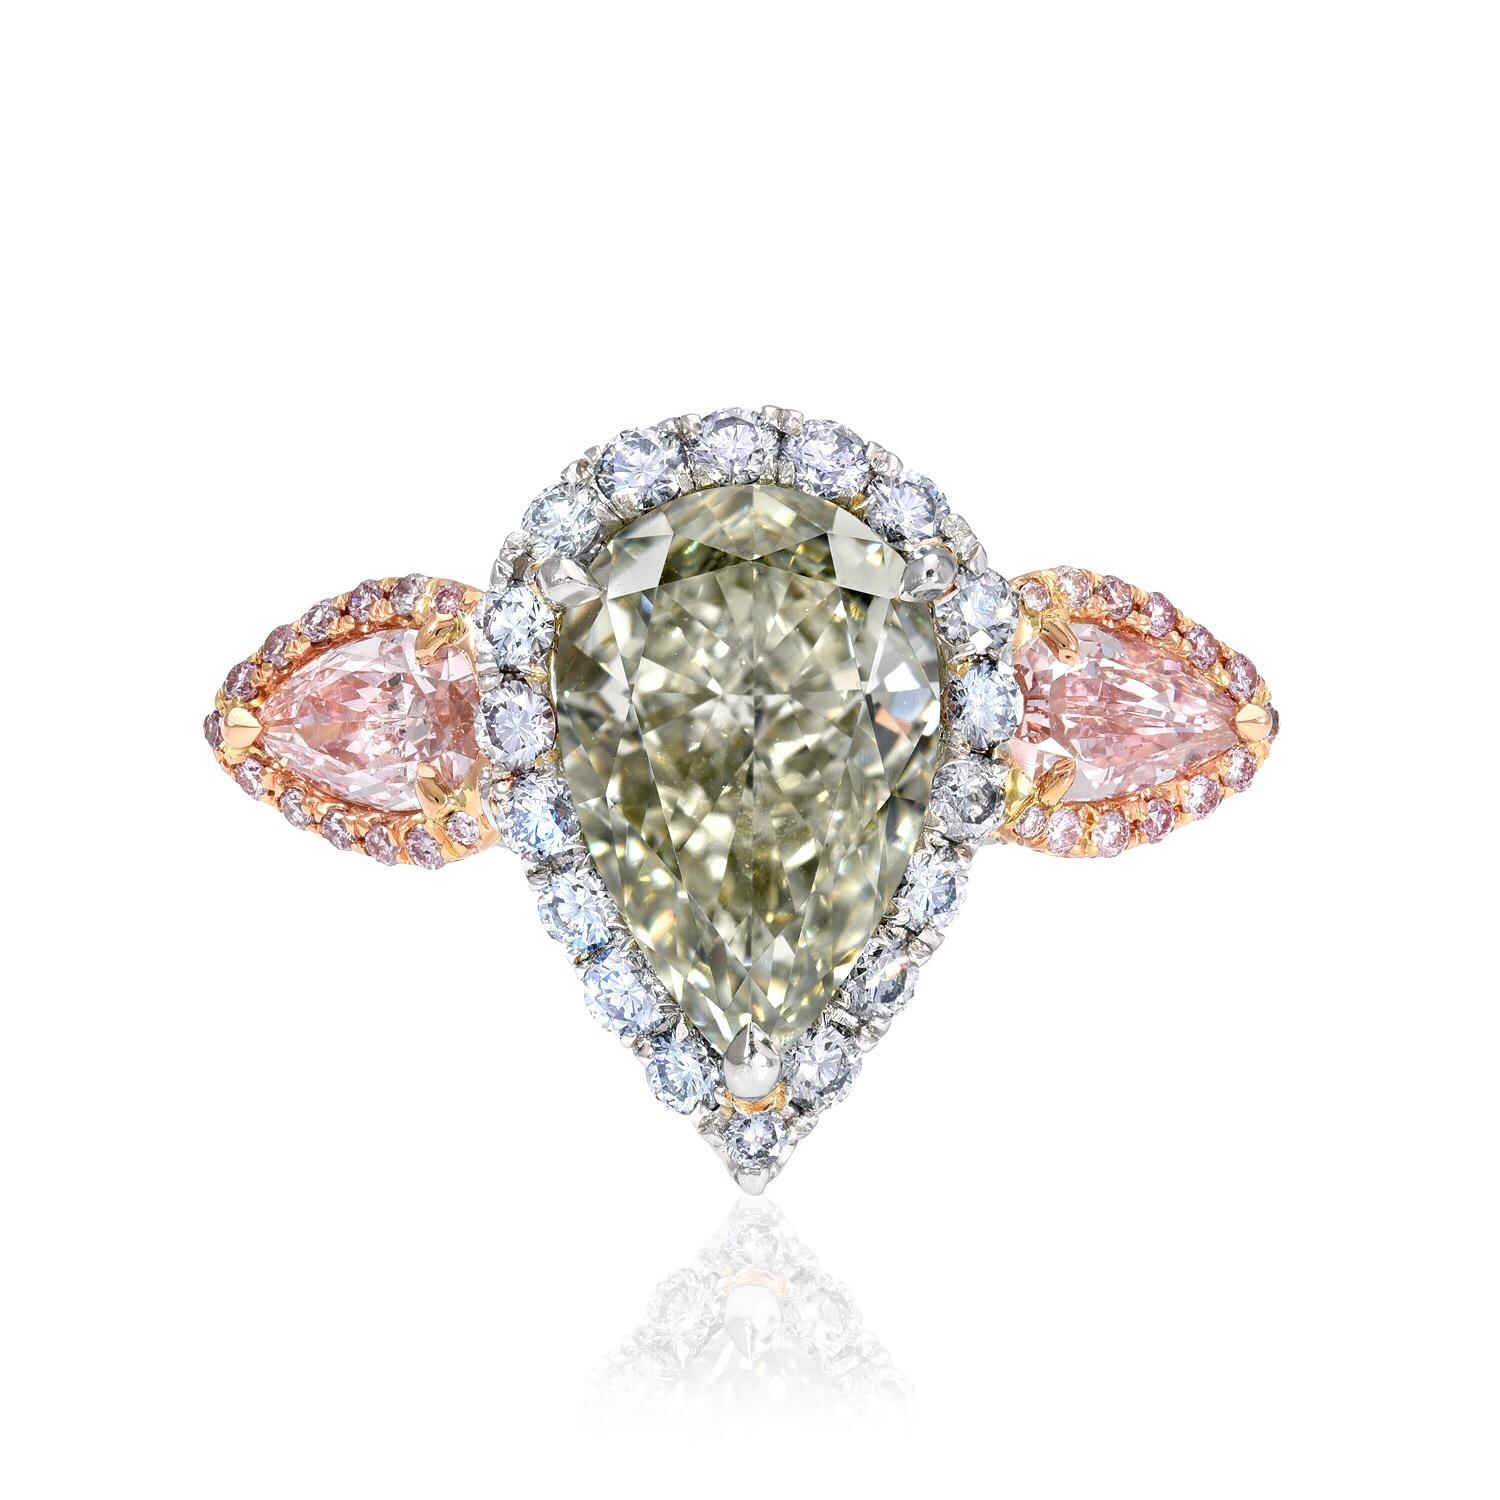 Sehr seltener und exklusiver 5,16-Karat-Diamant in natürlicher Fancy-Birnenform von tiefem graugrünem Farbton, Reinheit VS2, umgeben von natürlichen runden Fancy-Blauen Brillanten, flankiert von einem Paar natürlicher Fancy-Pink-Diamanten in